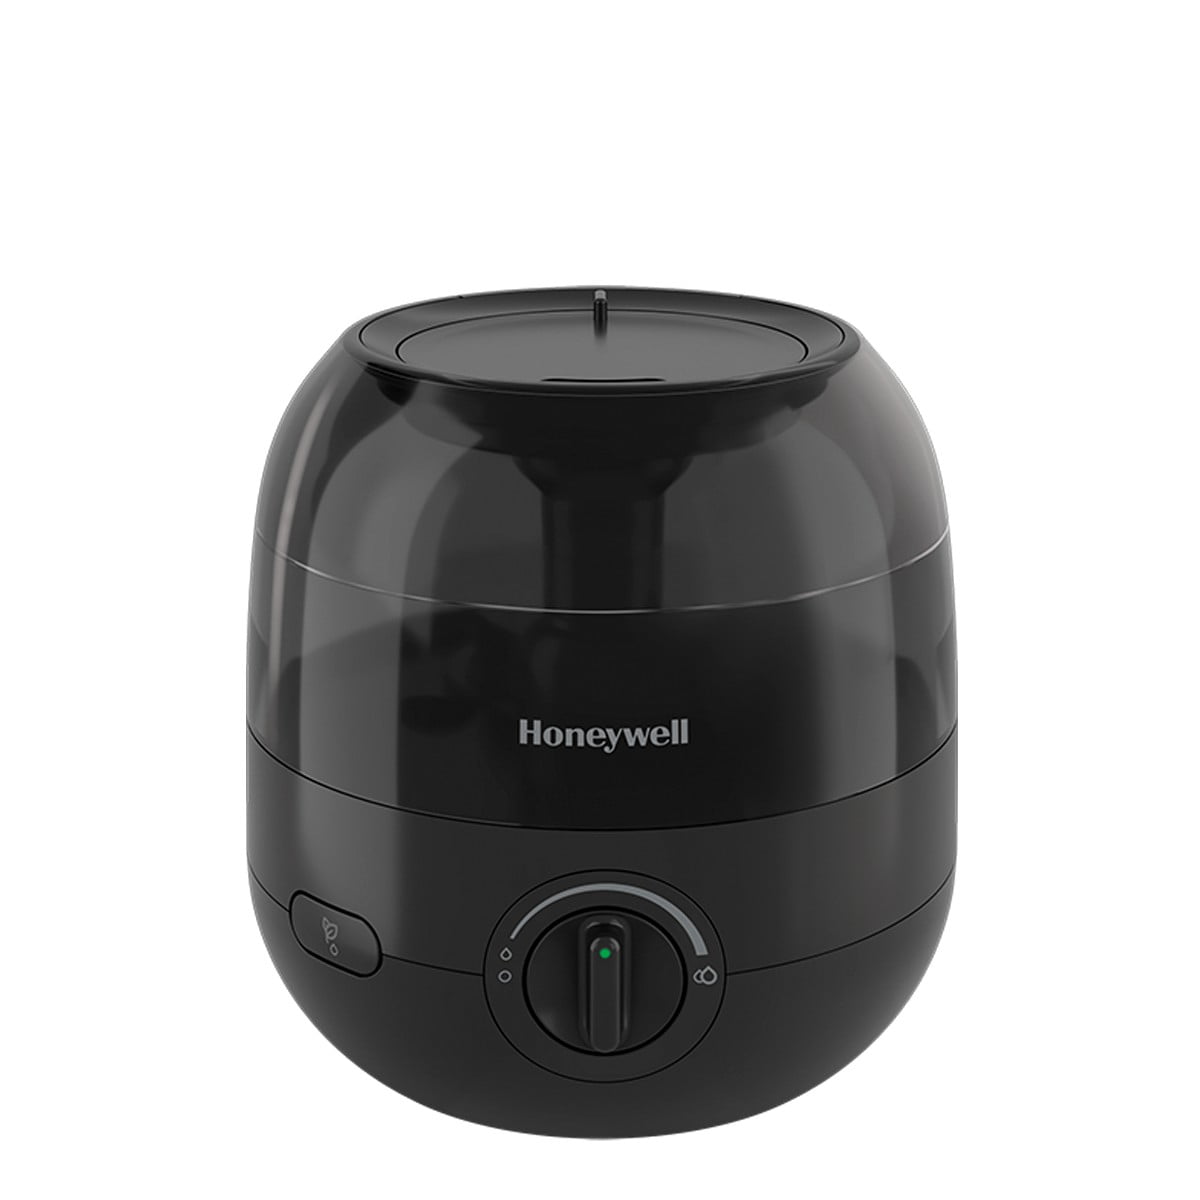 Honeywell Mini Mist Cool Mist Humidifier, HUL525B, Black